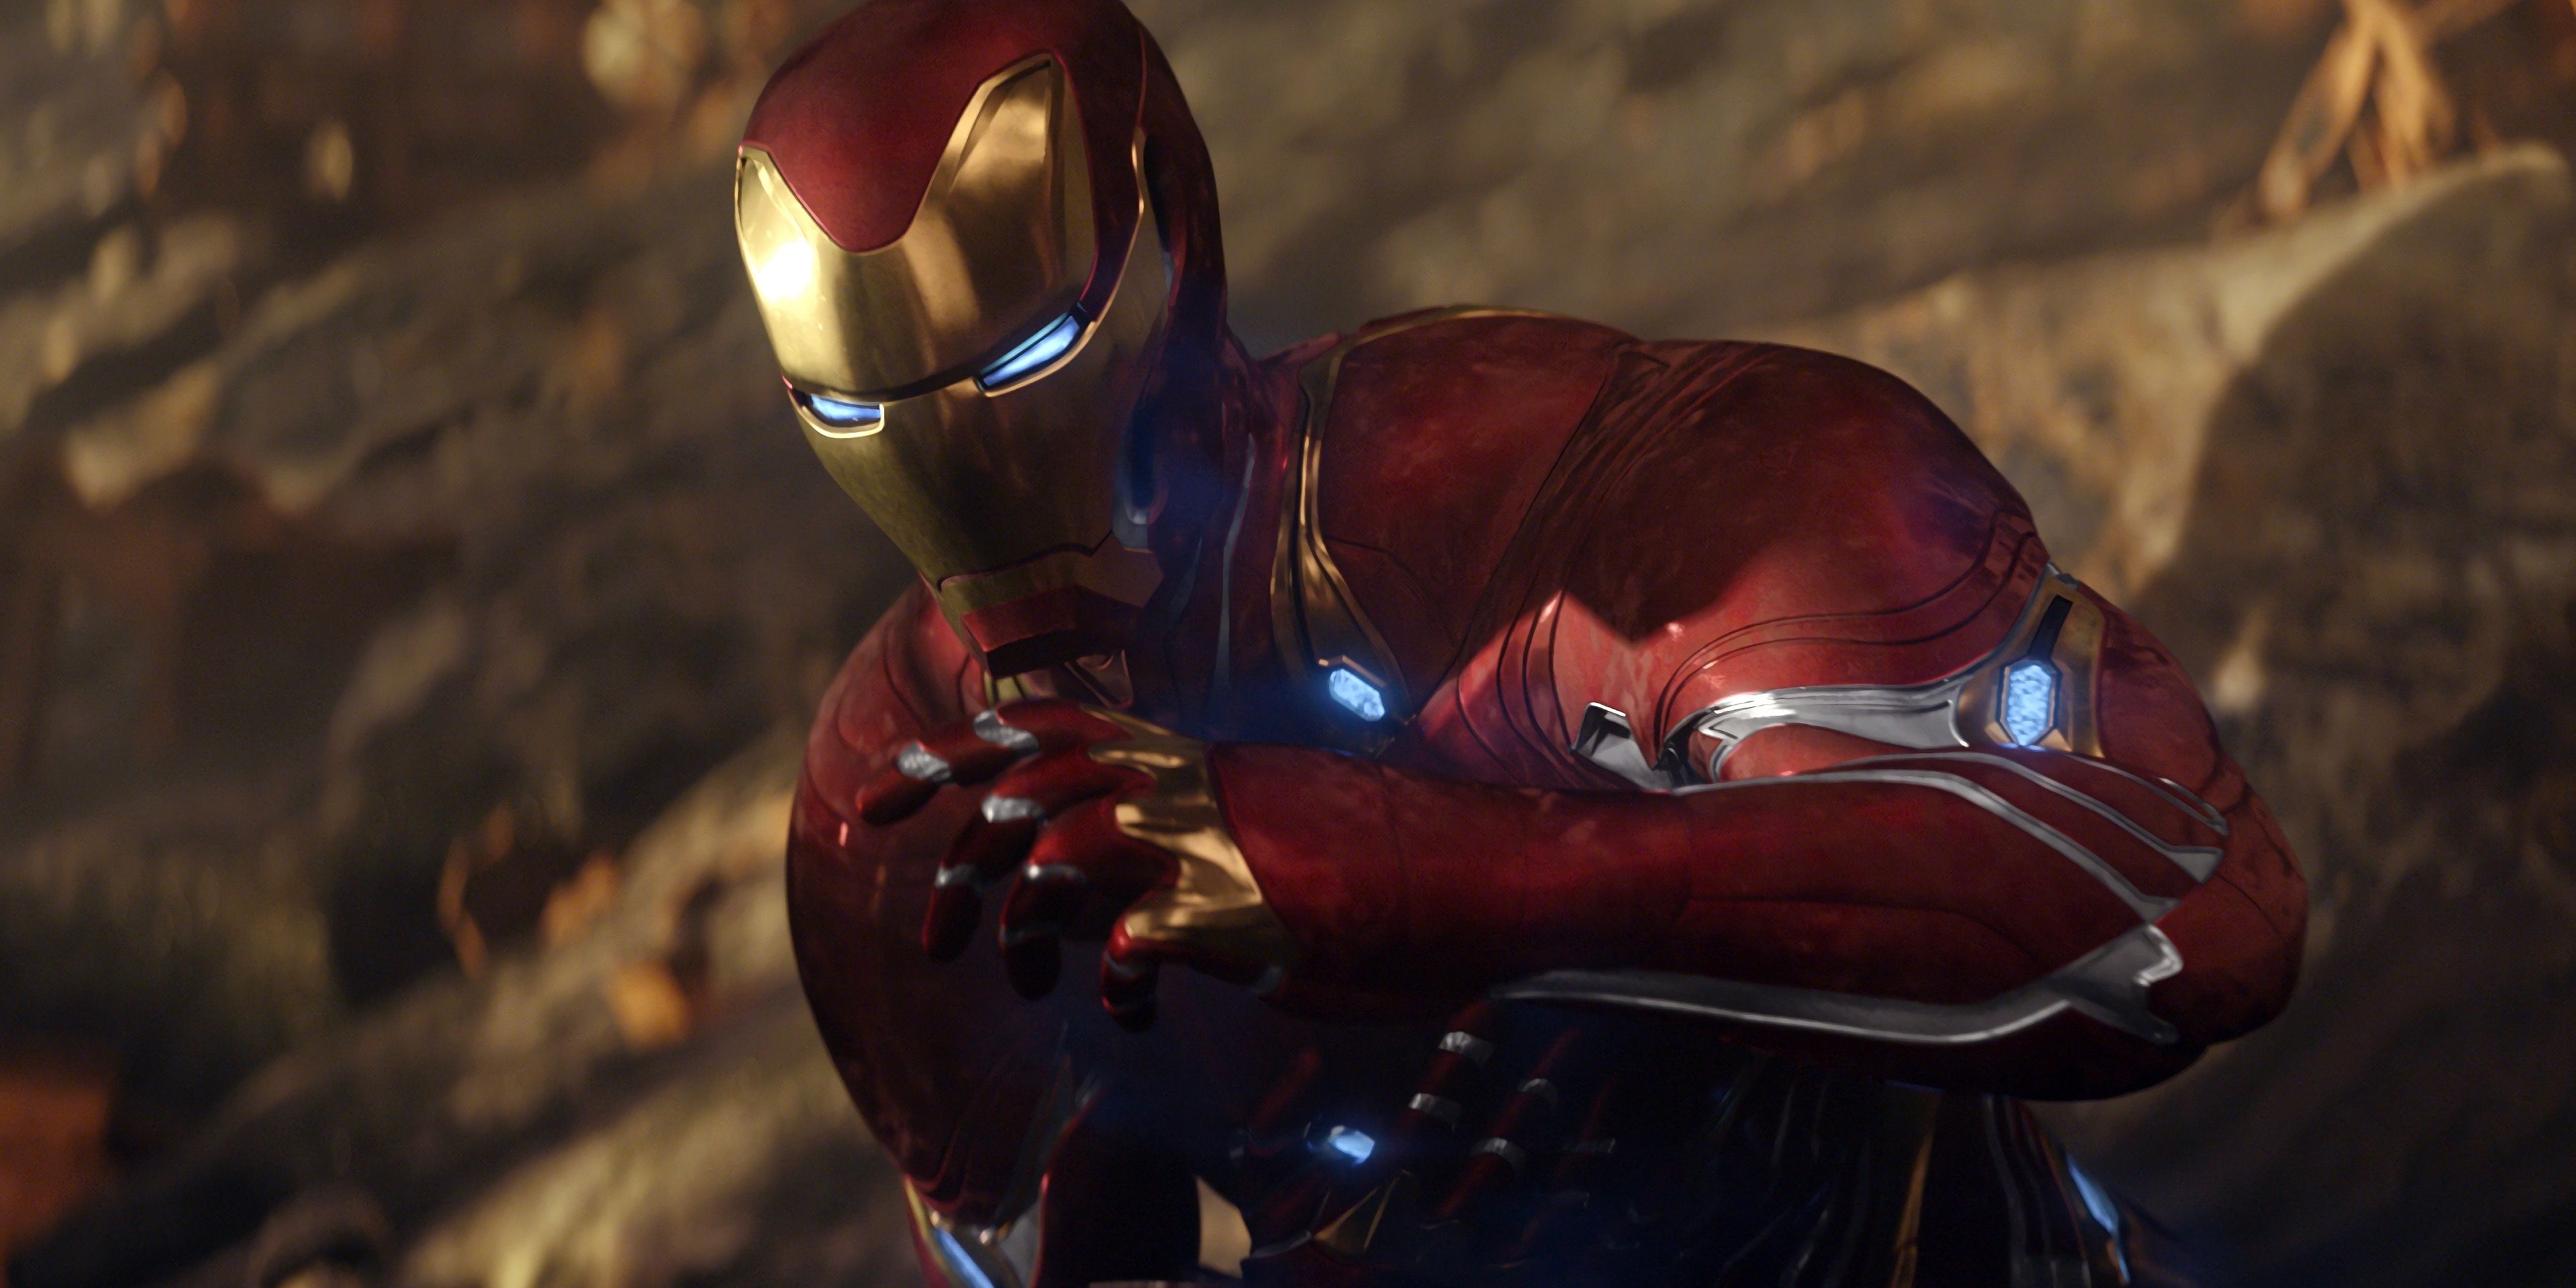 Iron Man's suit in Infinity War